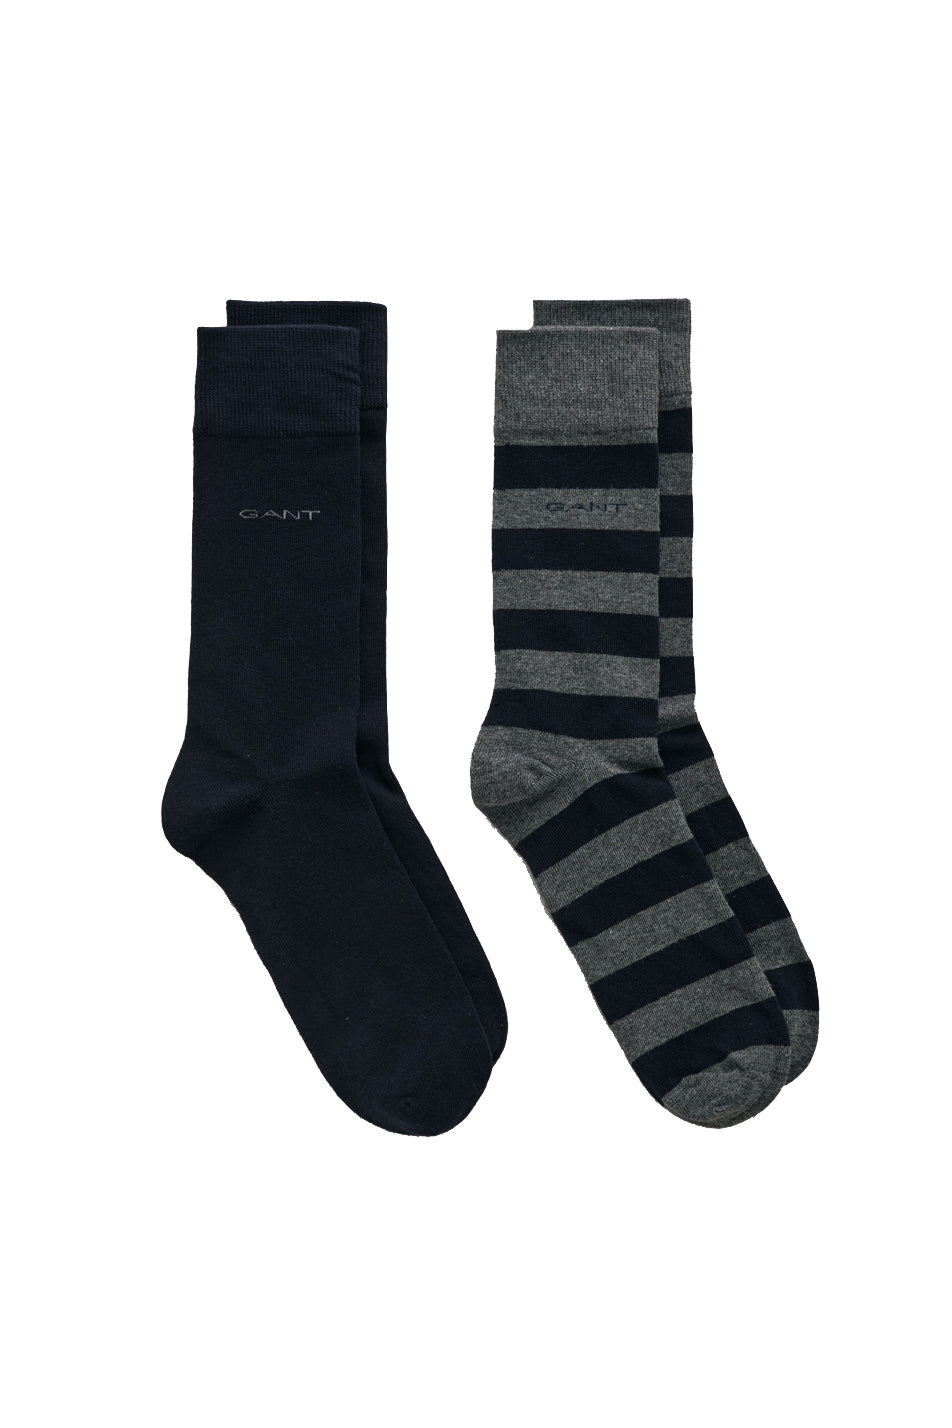 Gant 2 Pack Men's Barstripe and Solid Socks